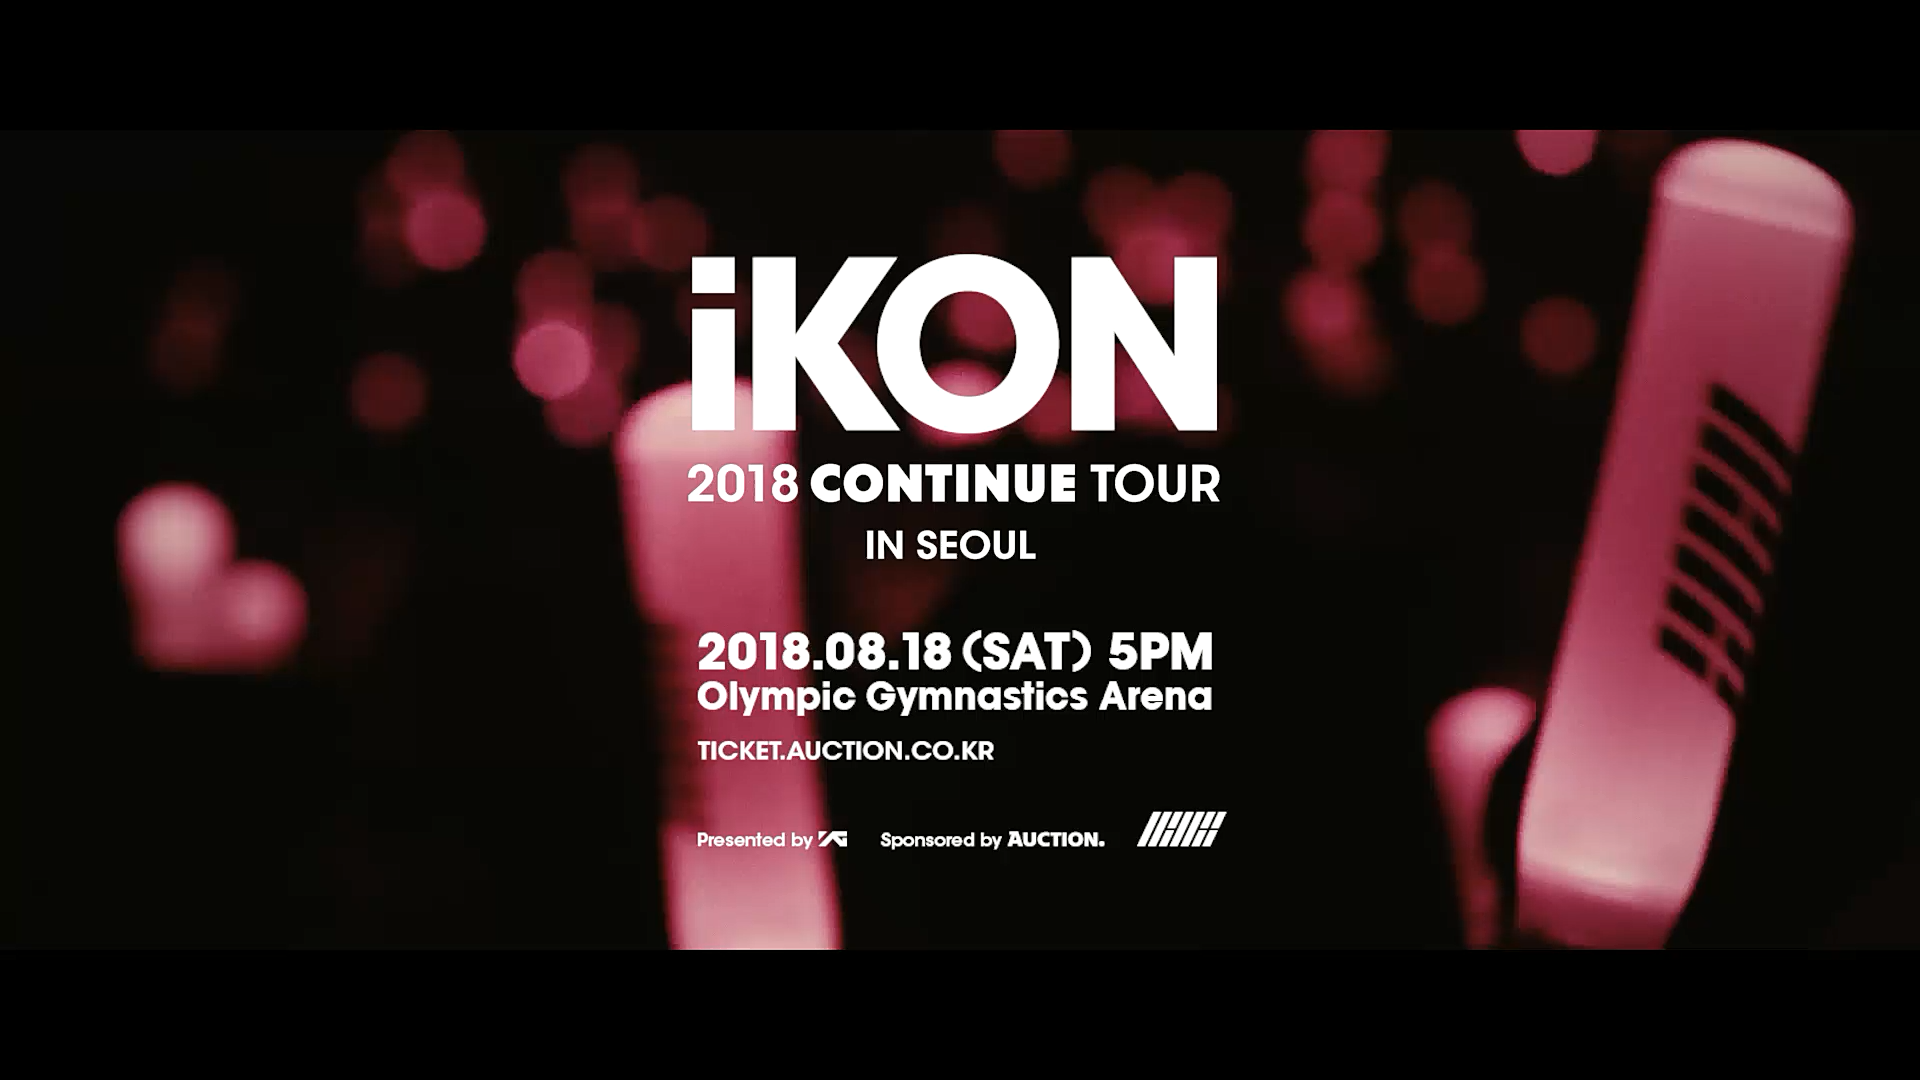 iKON - 2018 CONTINUE TOUR TEASER #1